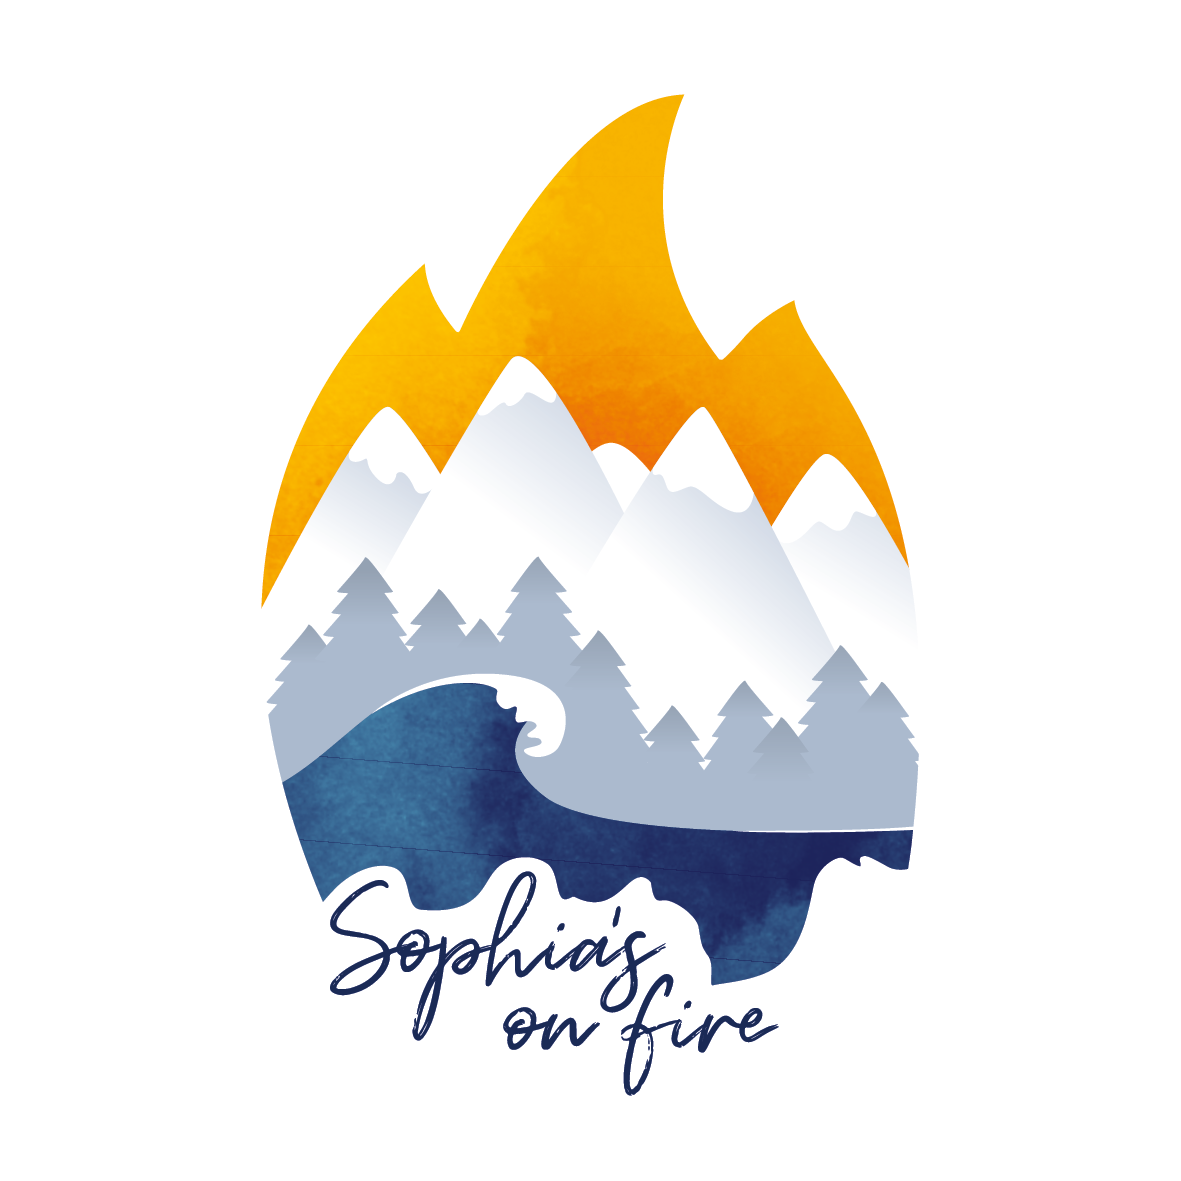 Sophia’s on fire